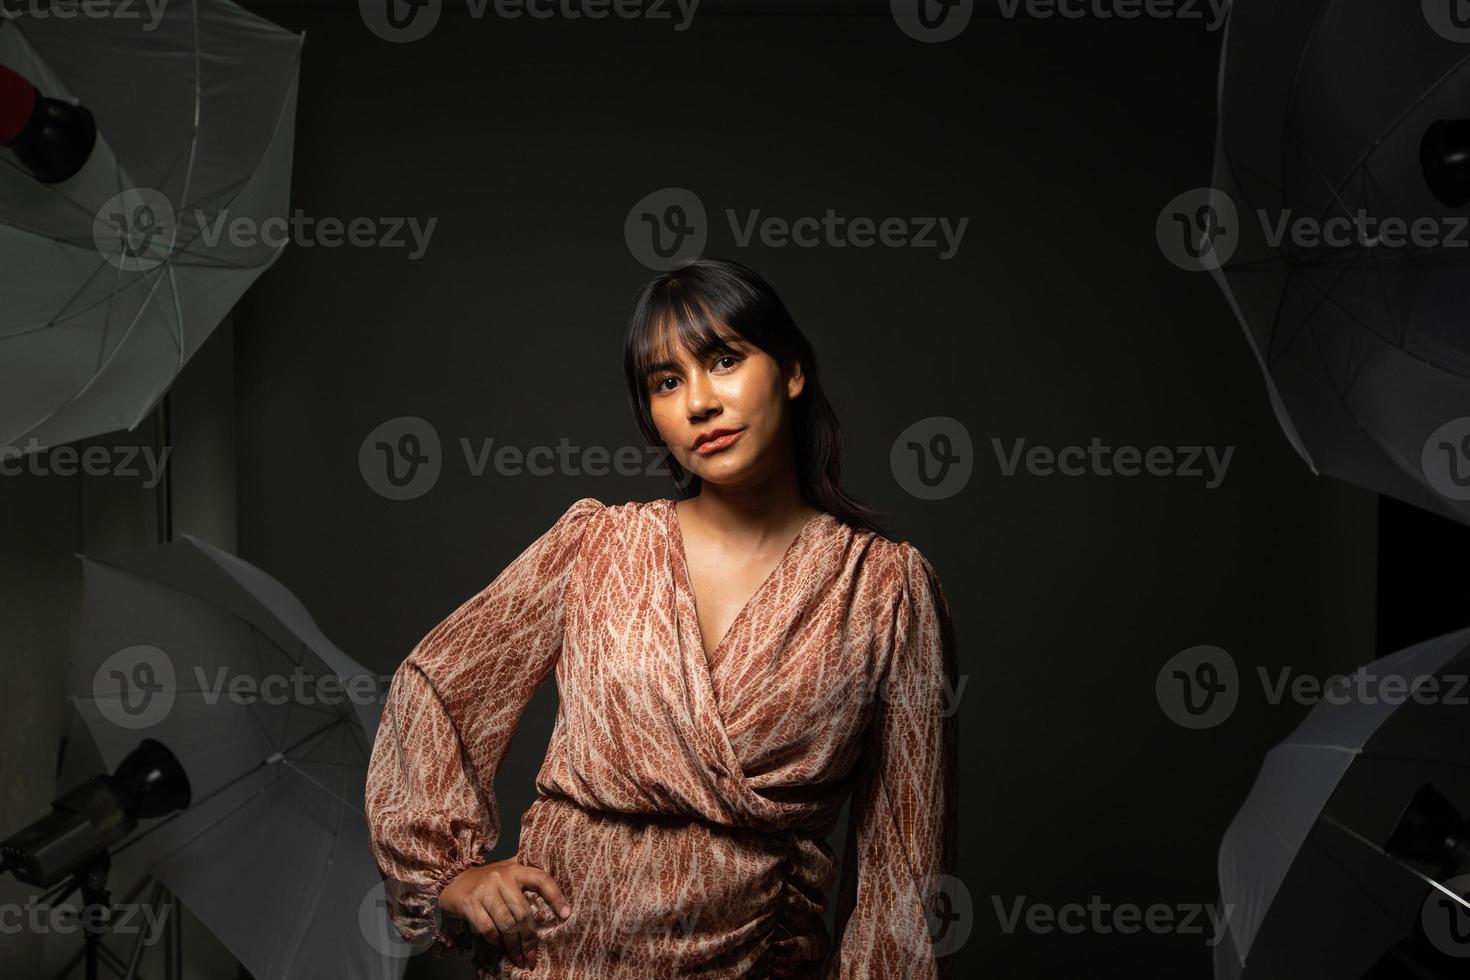 femme indienne asiatique montre un beau sourire lèvres heureuses, poses de mode en studio photo avec équipement